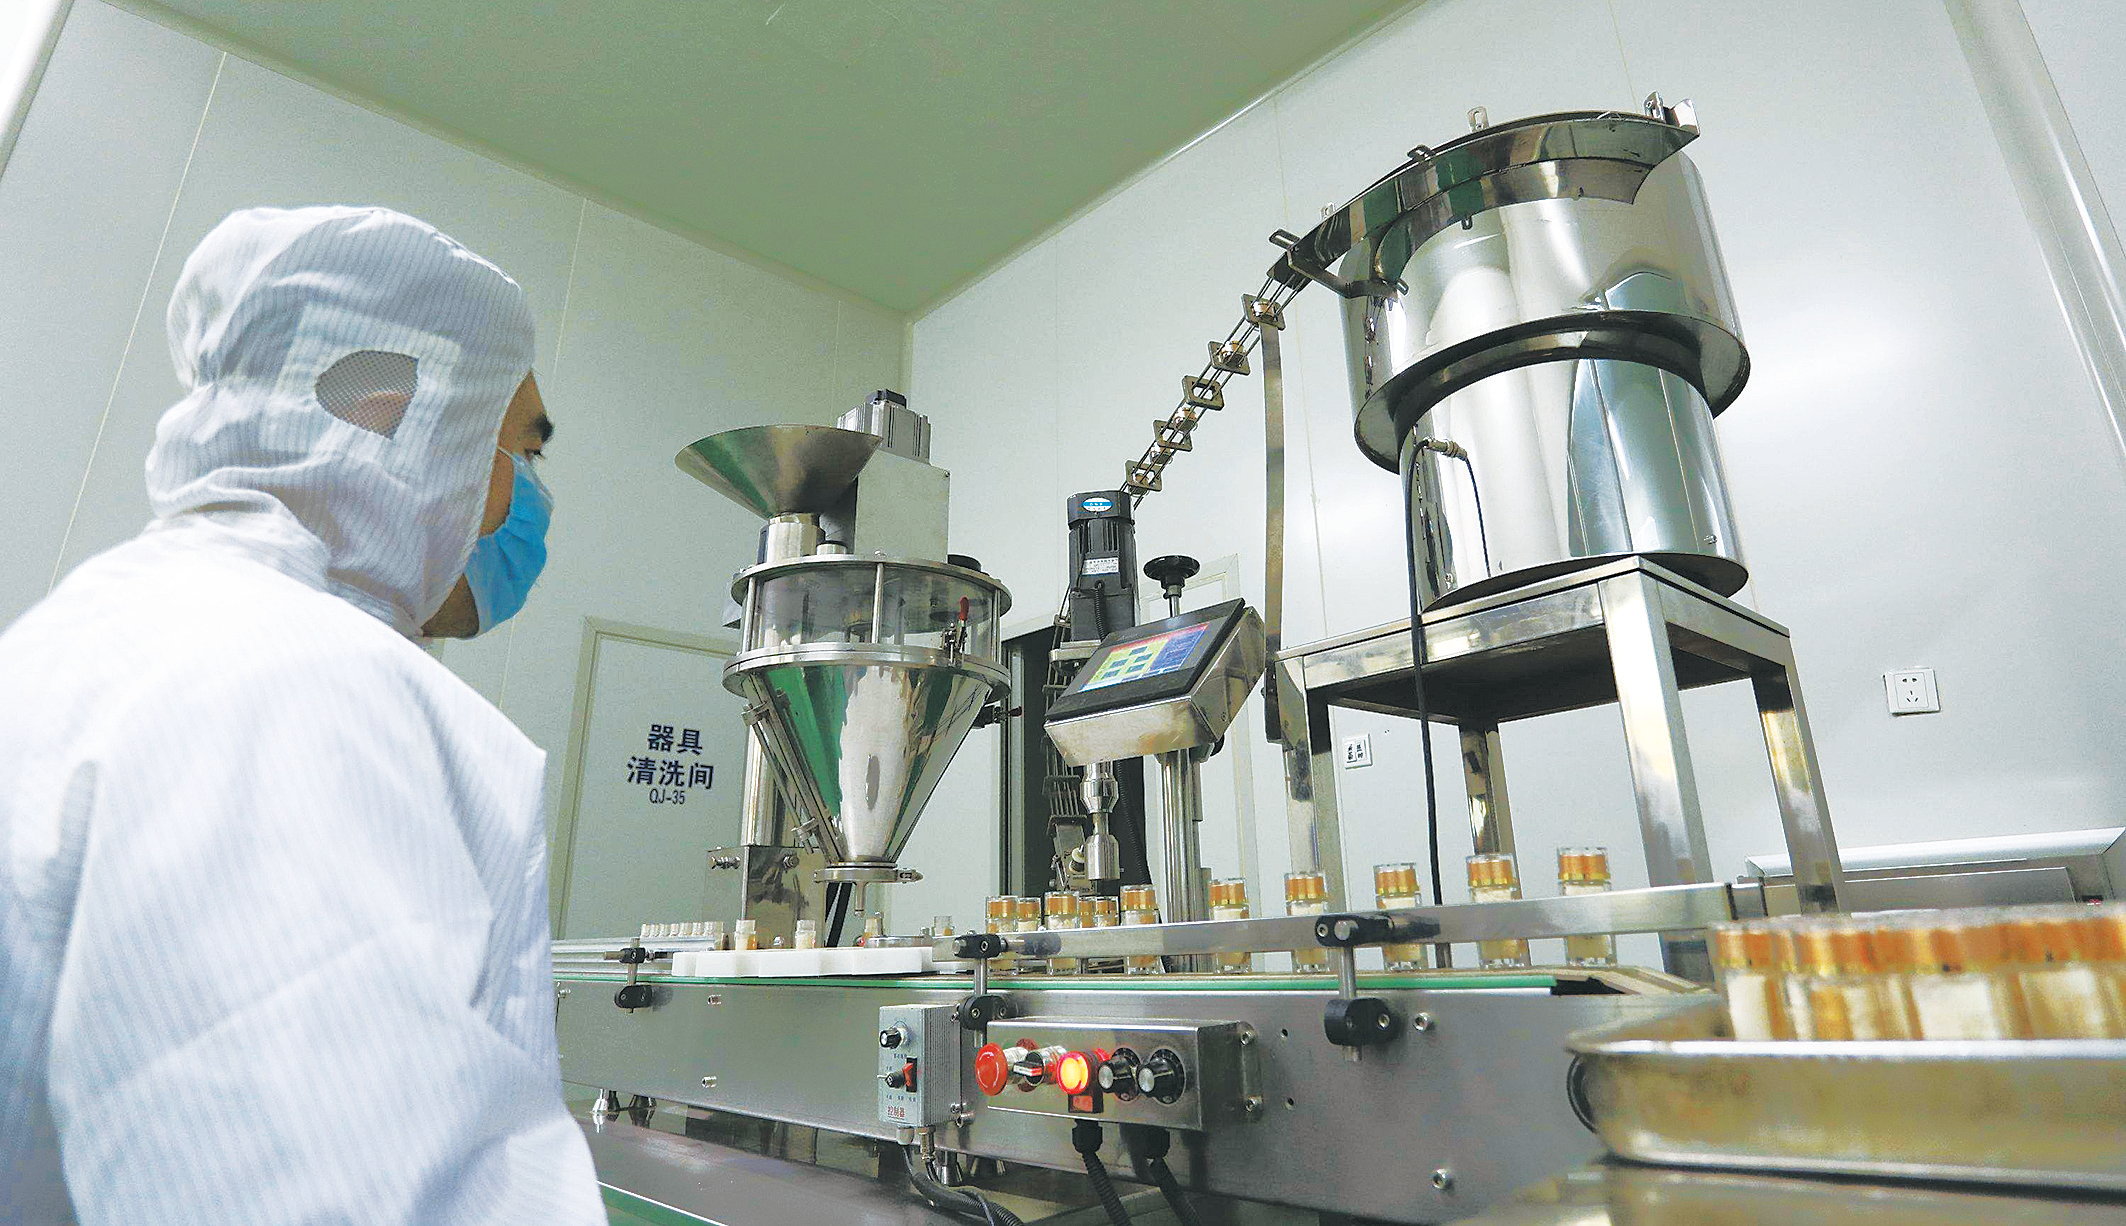 青海蓝稞农牧科技有限公司工人在生产青稞系列产品。丁玉梅 摄